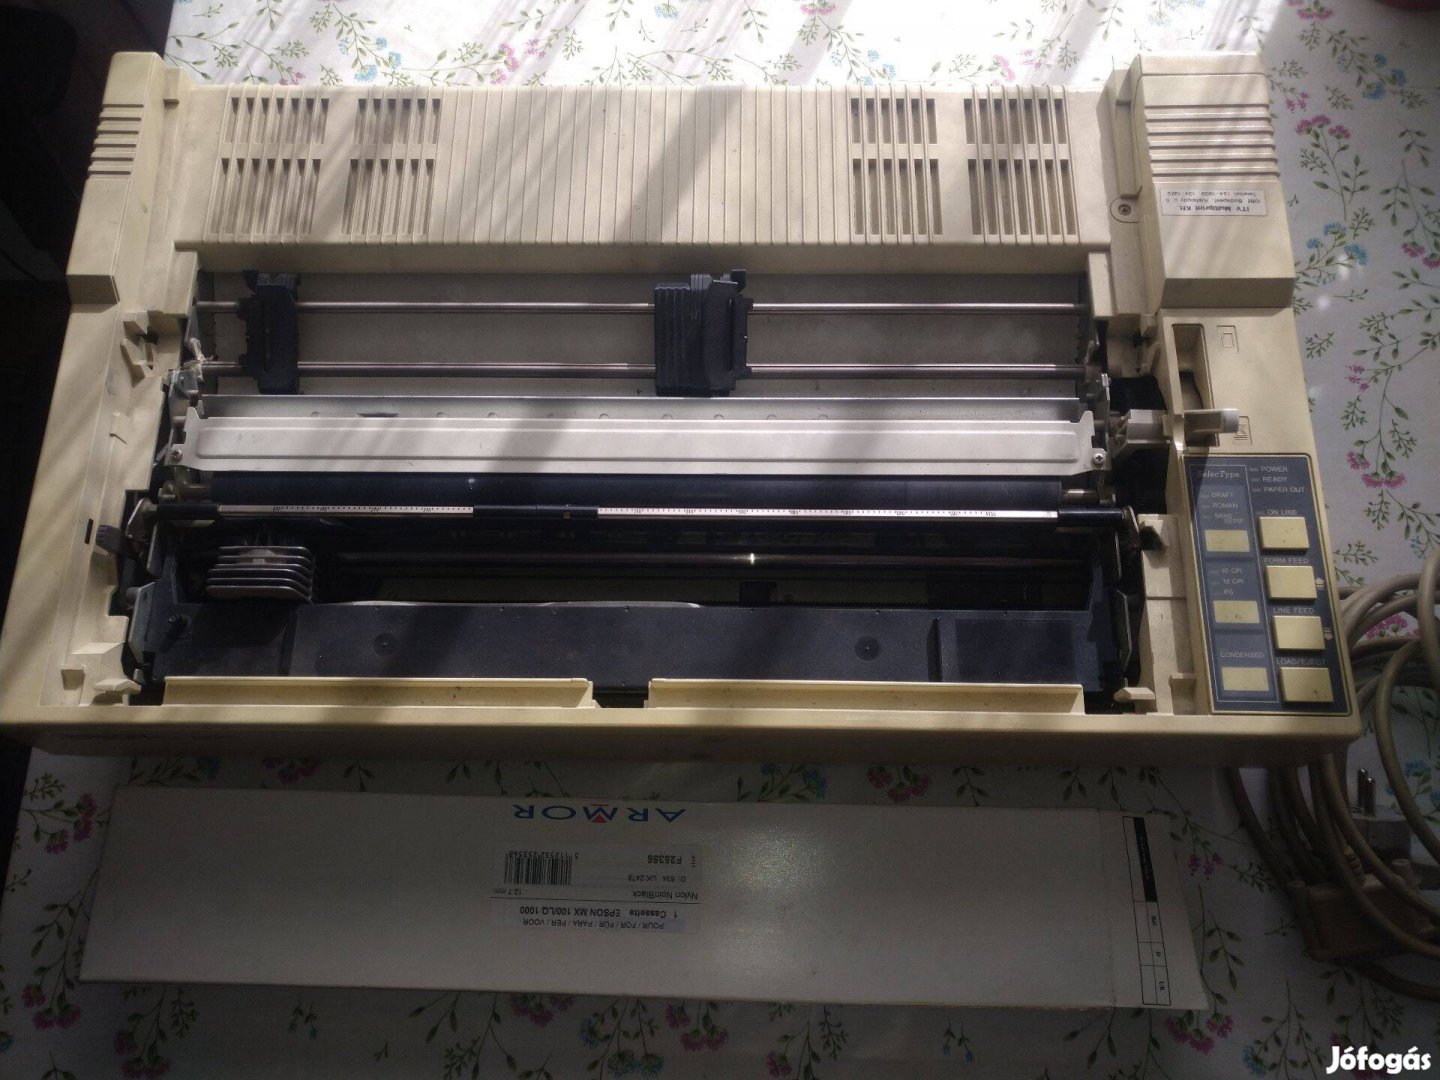 Epson Fxx-1050 A3 mátrix nyomtató hibás, hiányos alkatrésznek